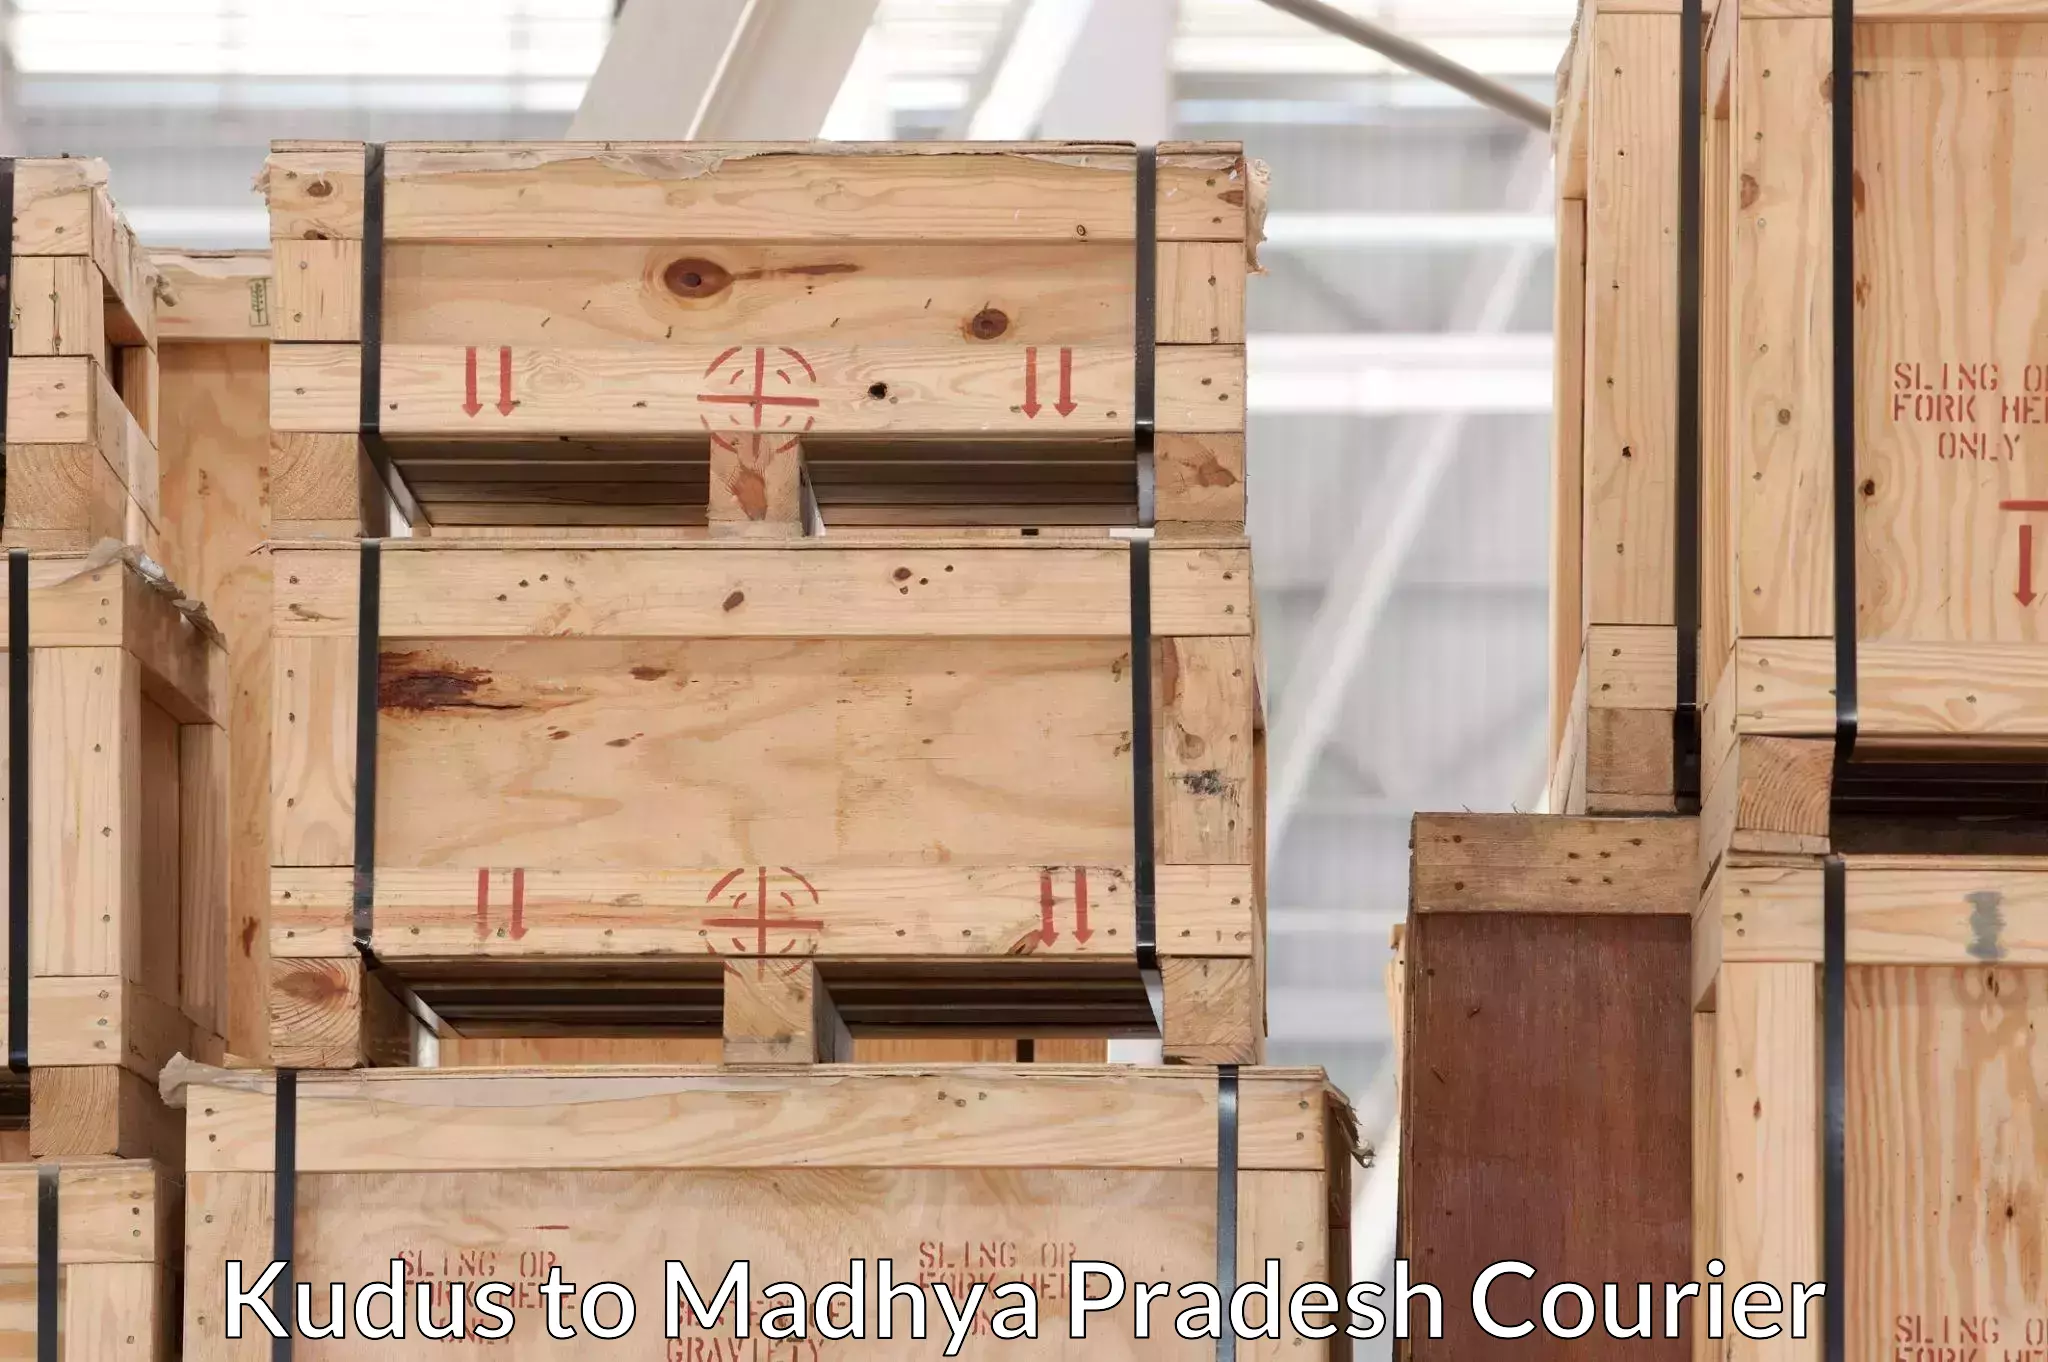 Furniture moving experts Kudus to Madhya Pradesh